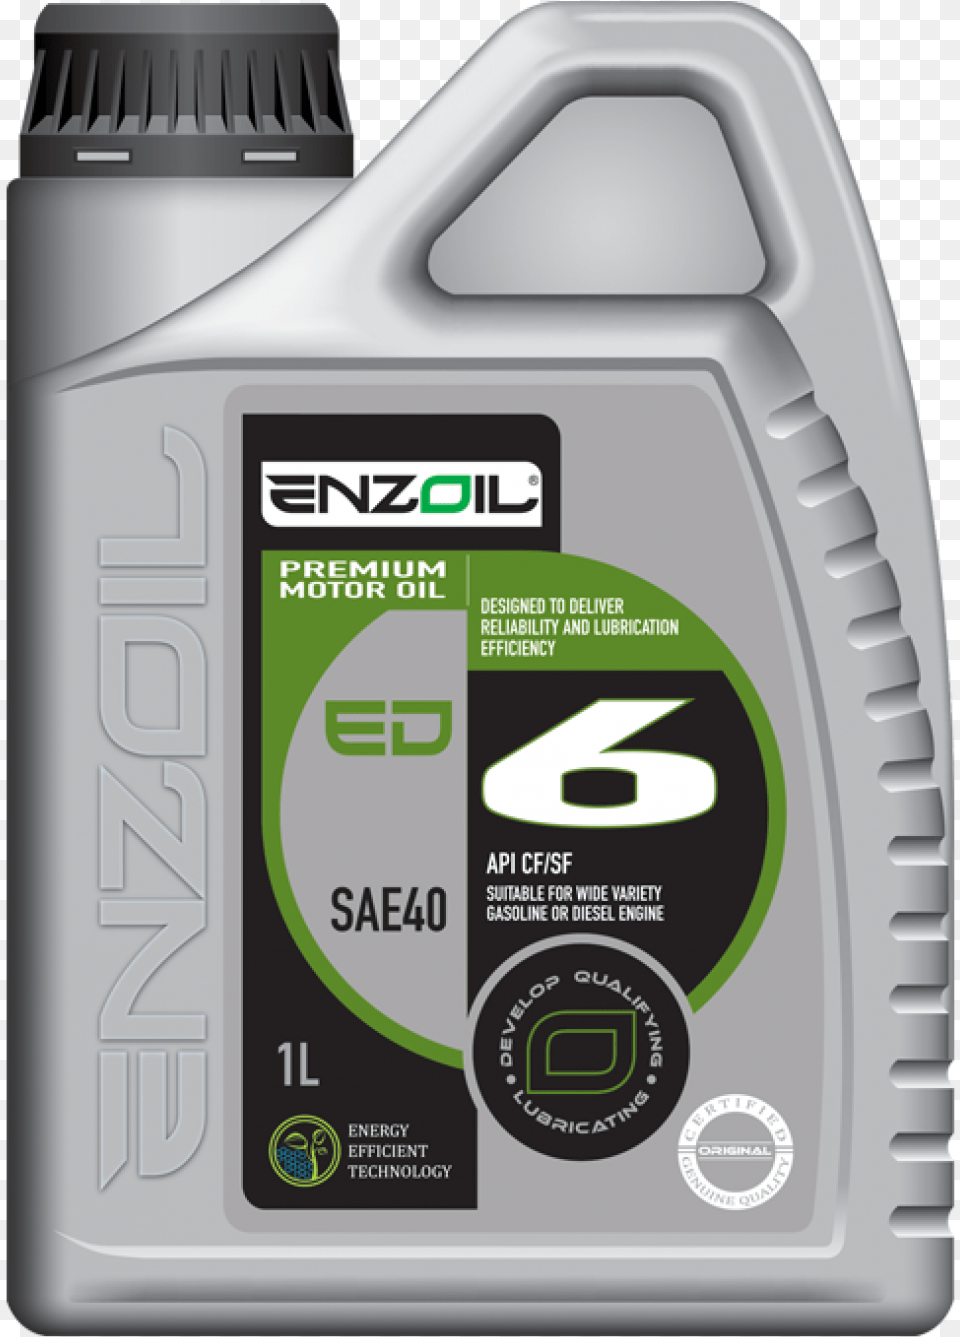 Enzoil Engine Oil, Bottle Free Transparent Png